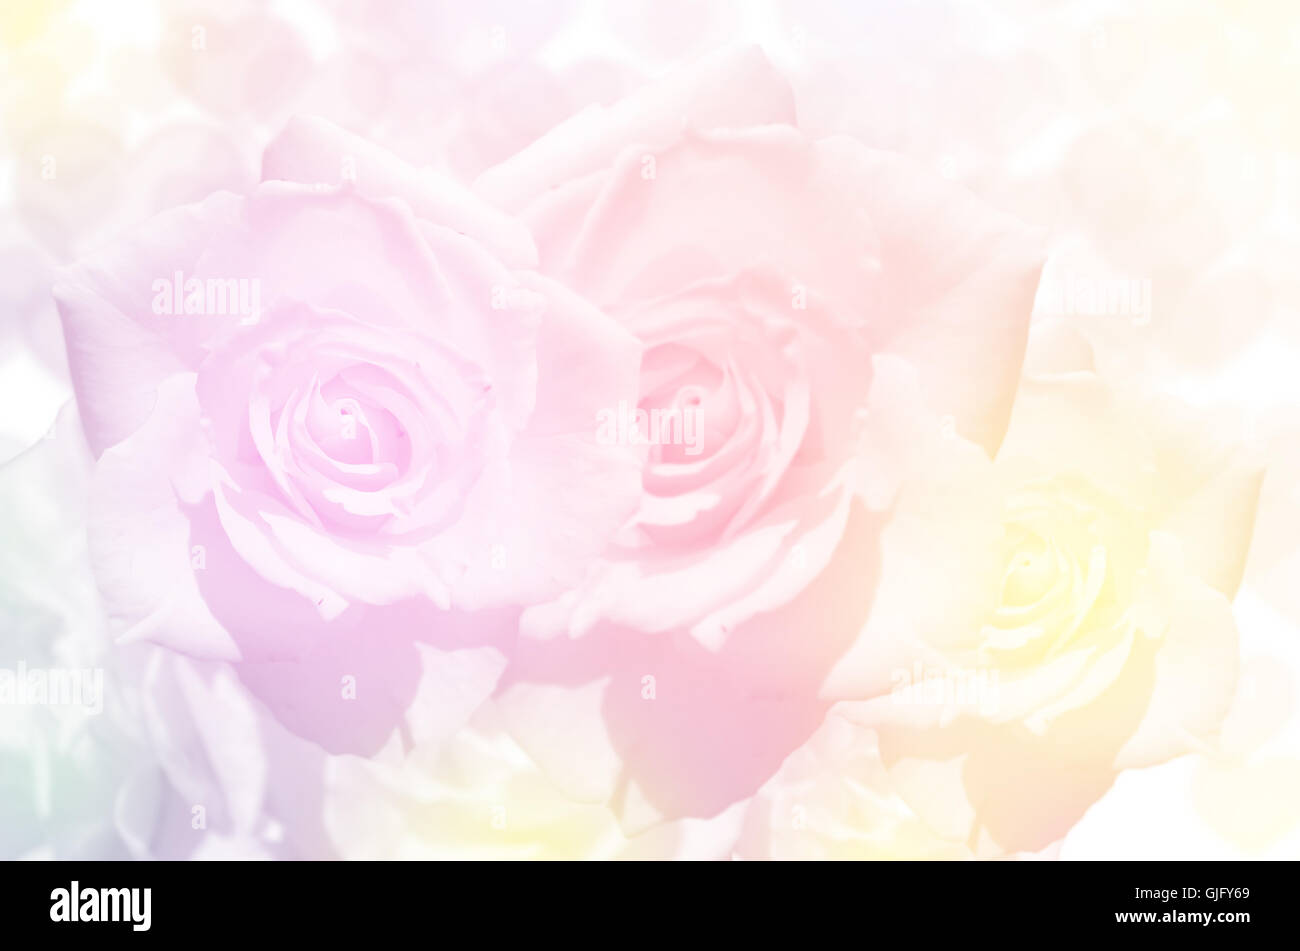 Rose Bouquet con foco suave filtrado de color como fondo. Foto de stock